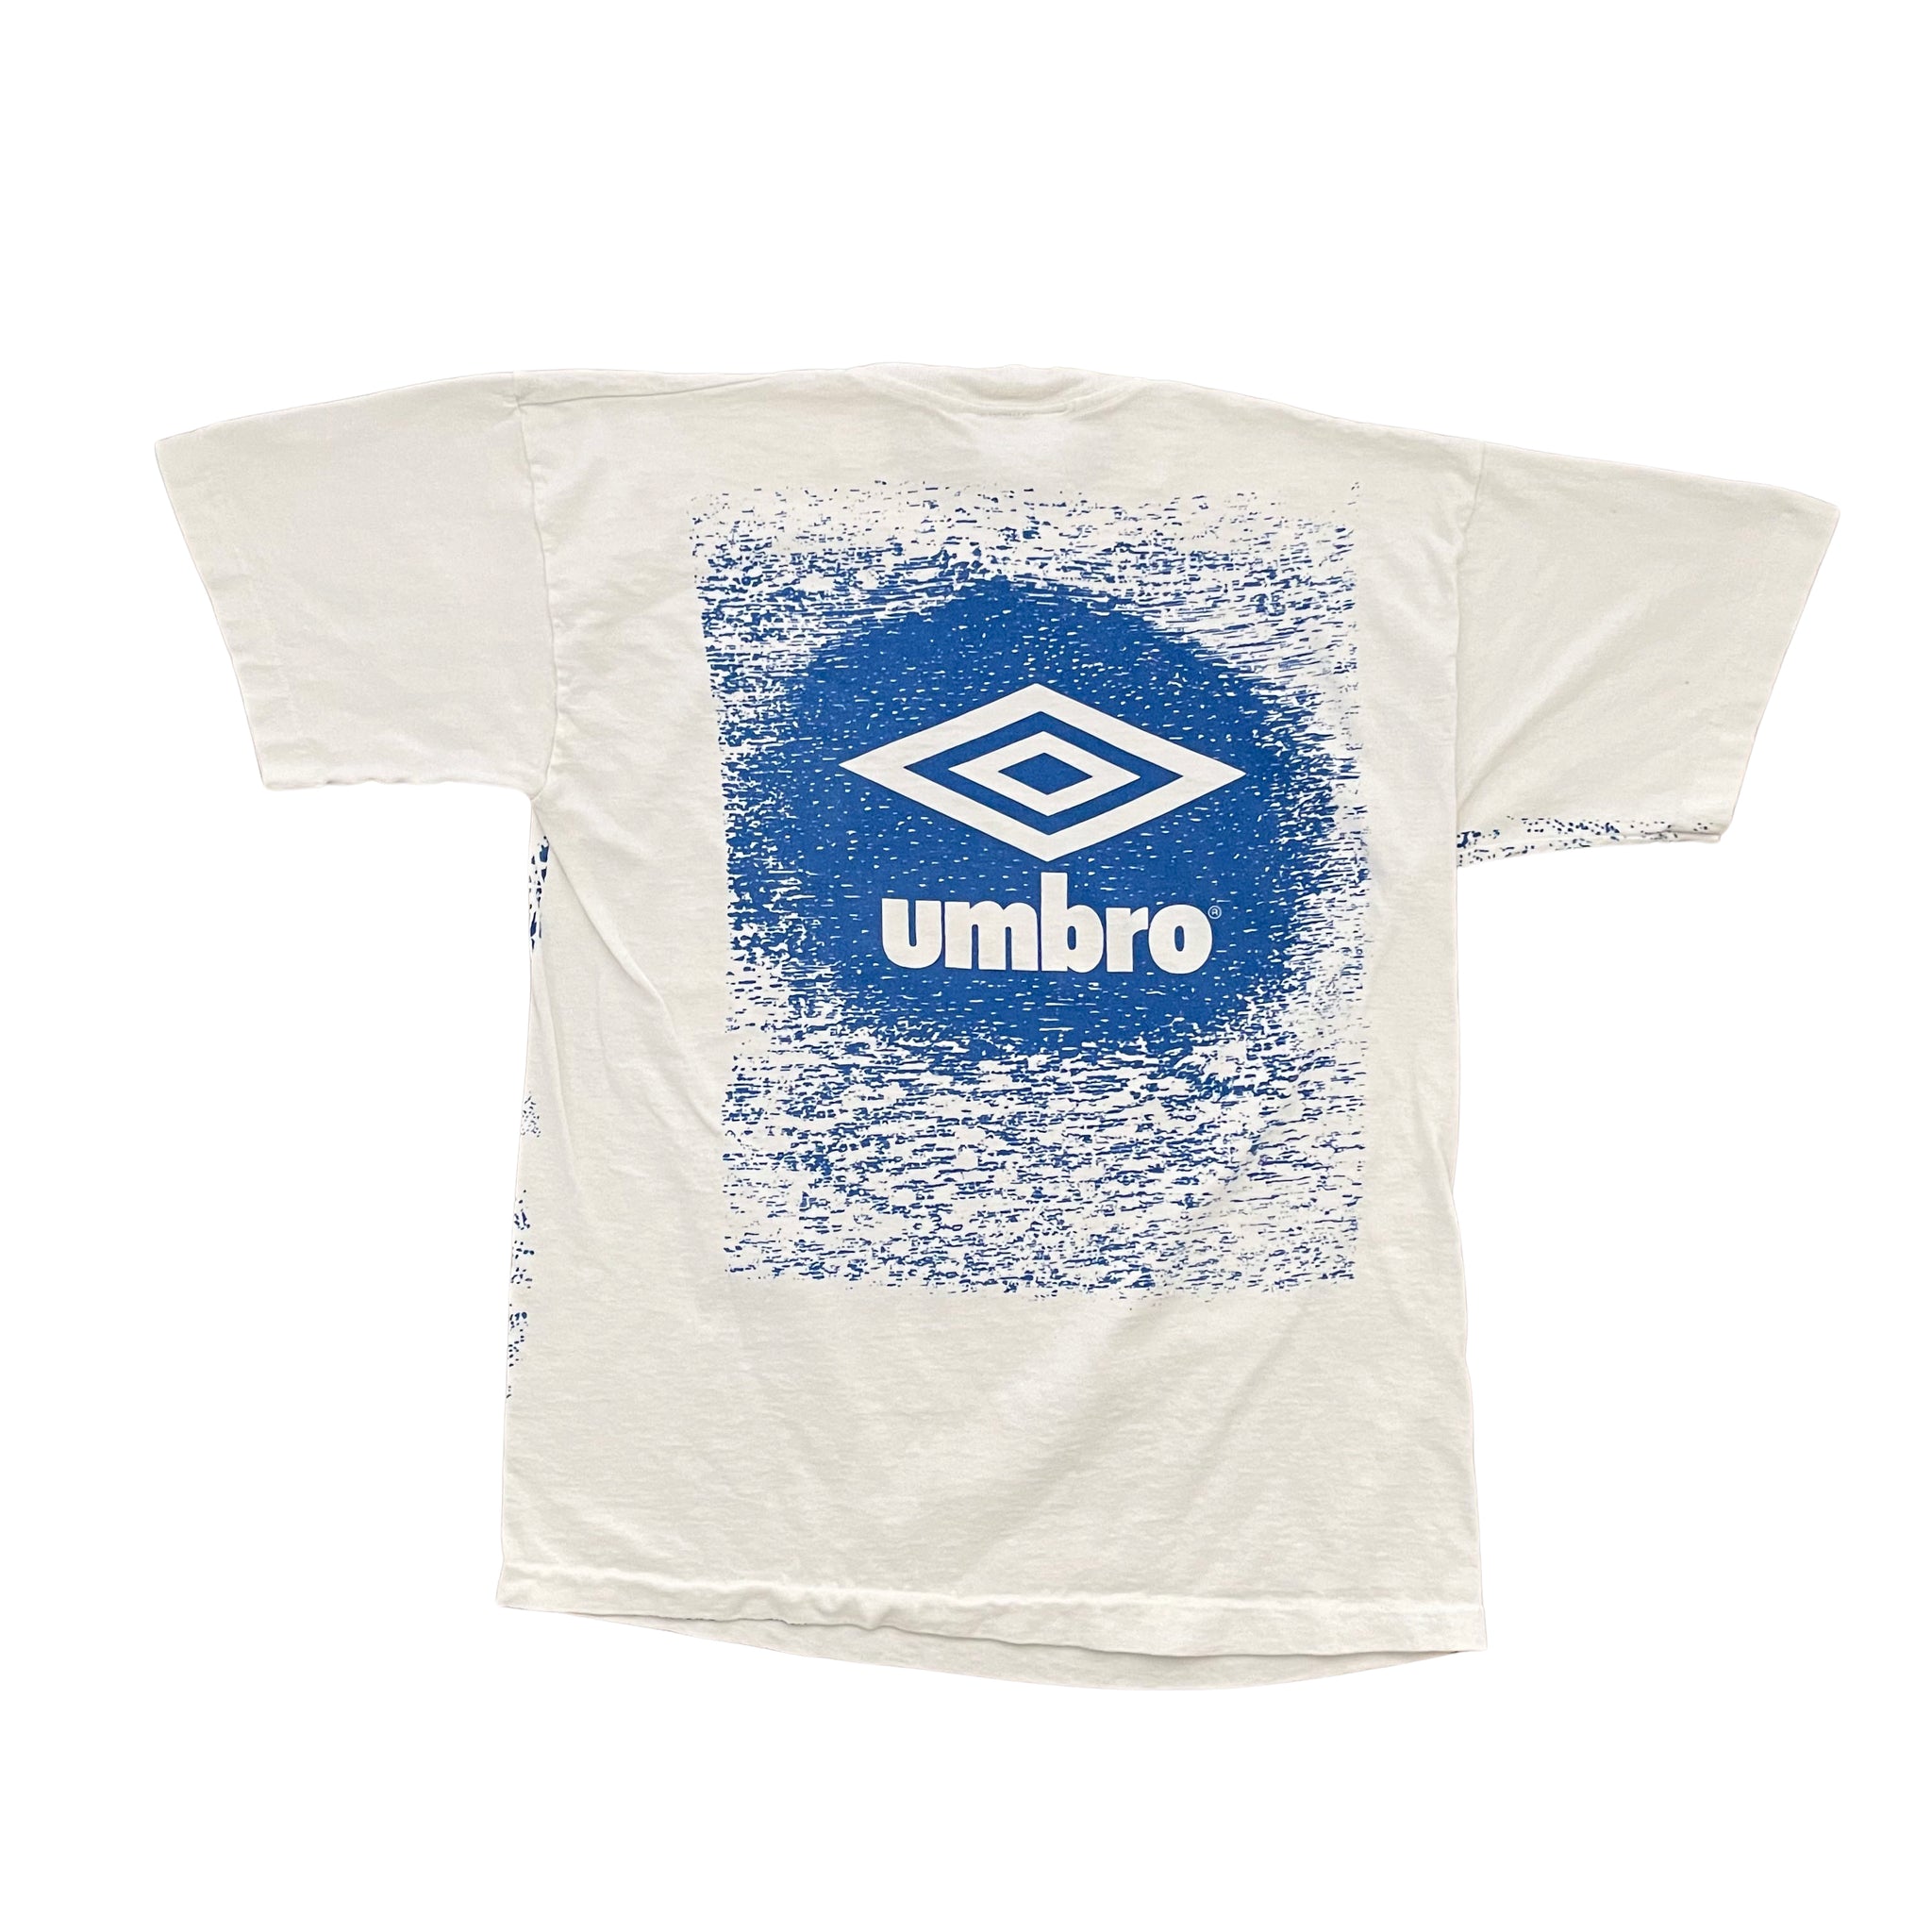 Umbro Parma AC T-Shirt - L